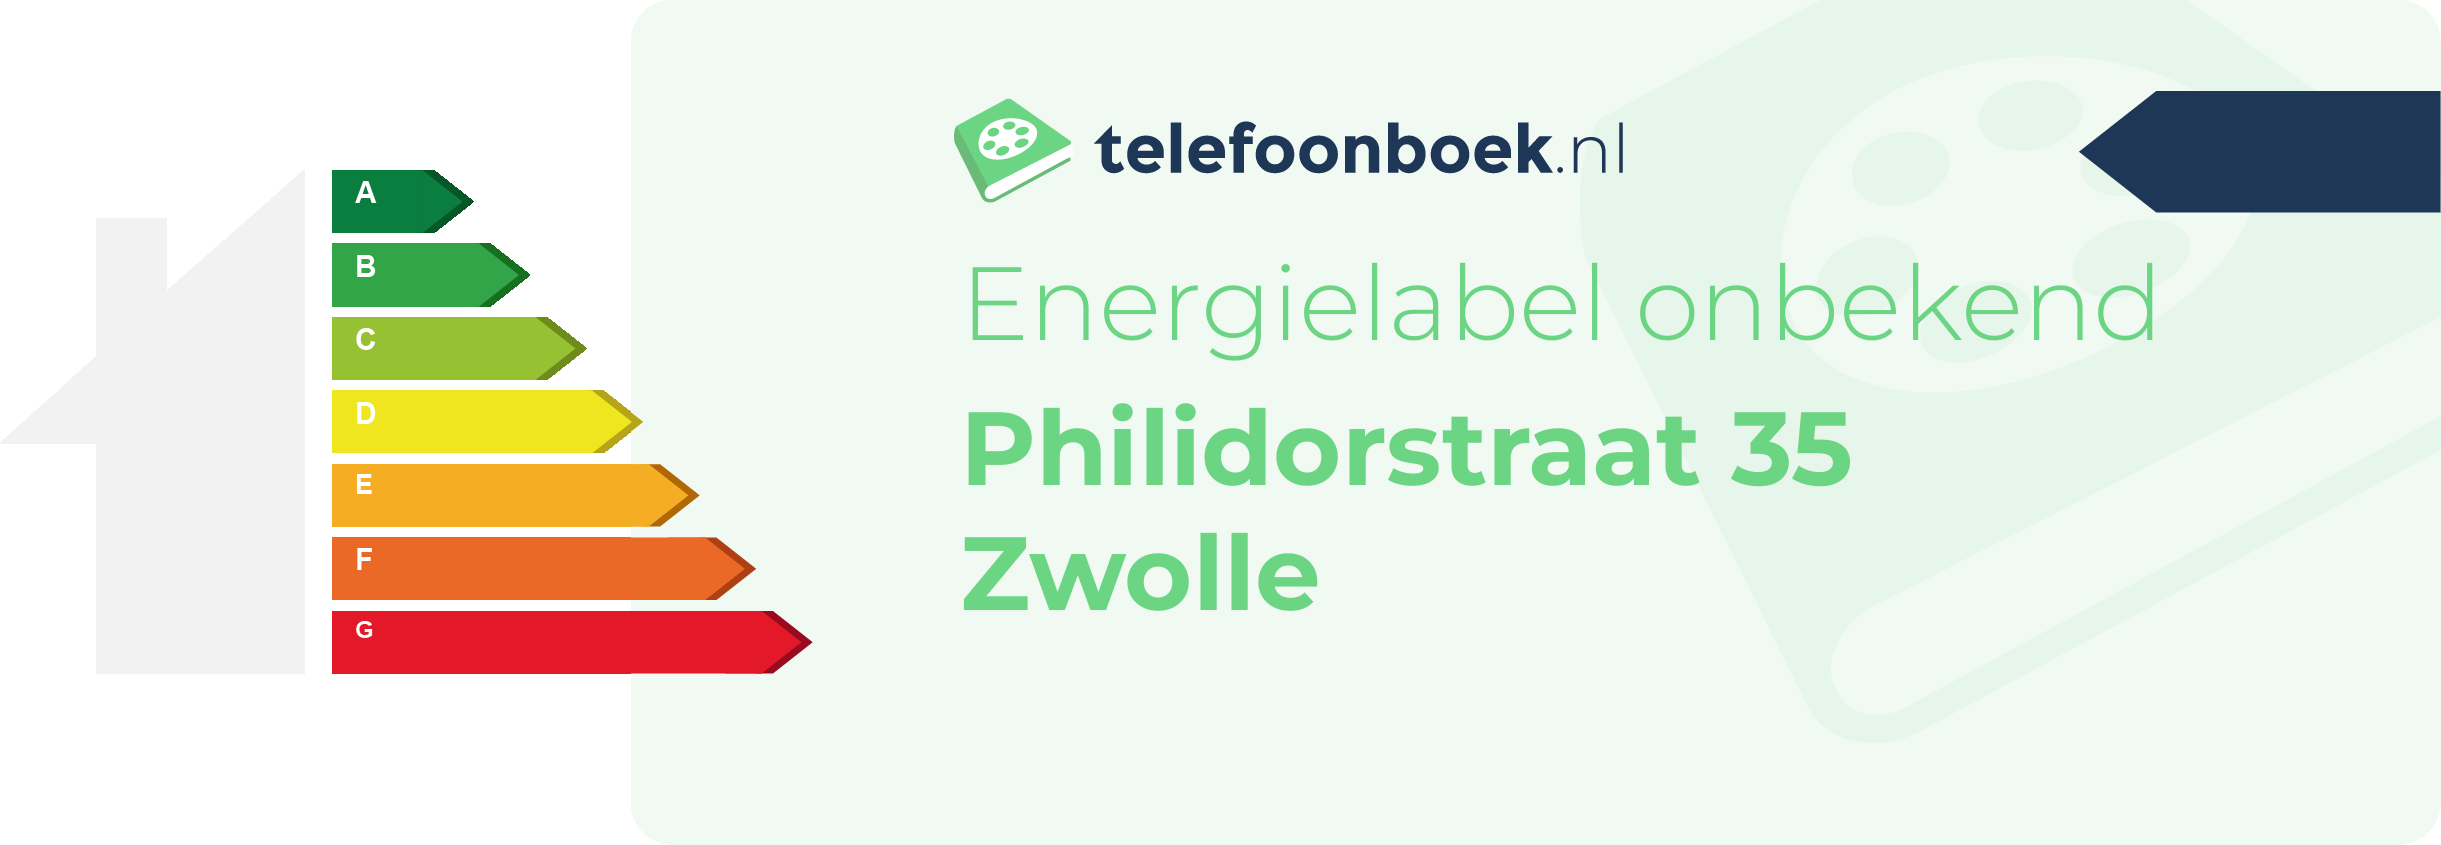 Energielabel Philidorstraat 35 Zwolle